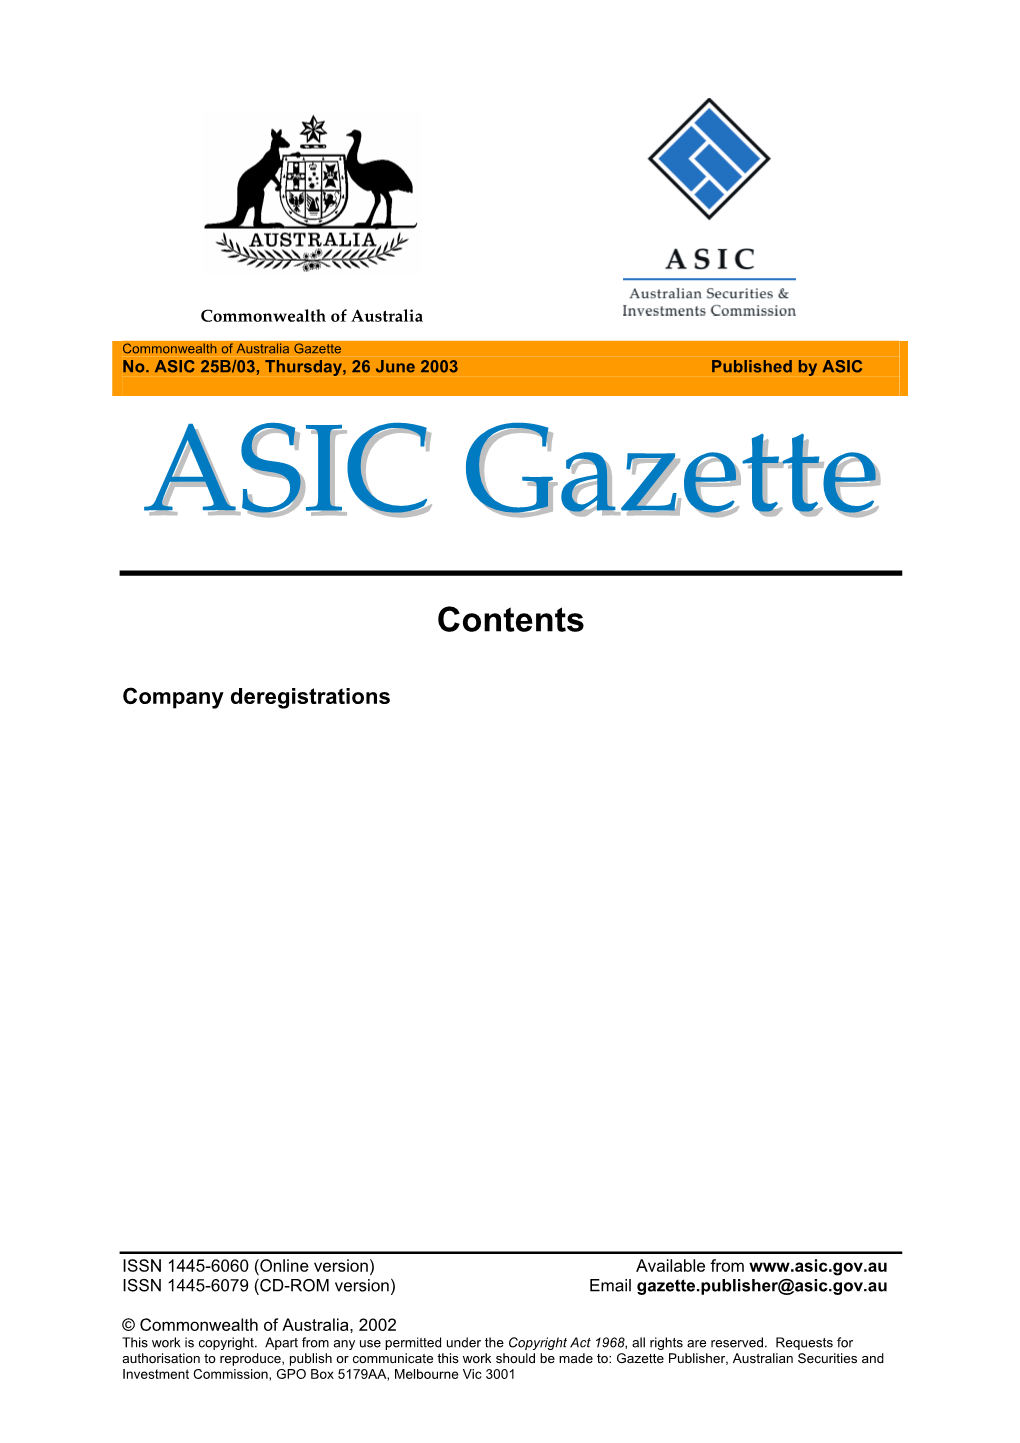 Commonwealth of Australia Gazette ASIC 25B/03 Dated Thursday 26 June 2003